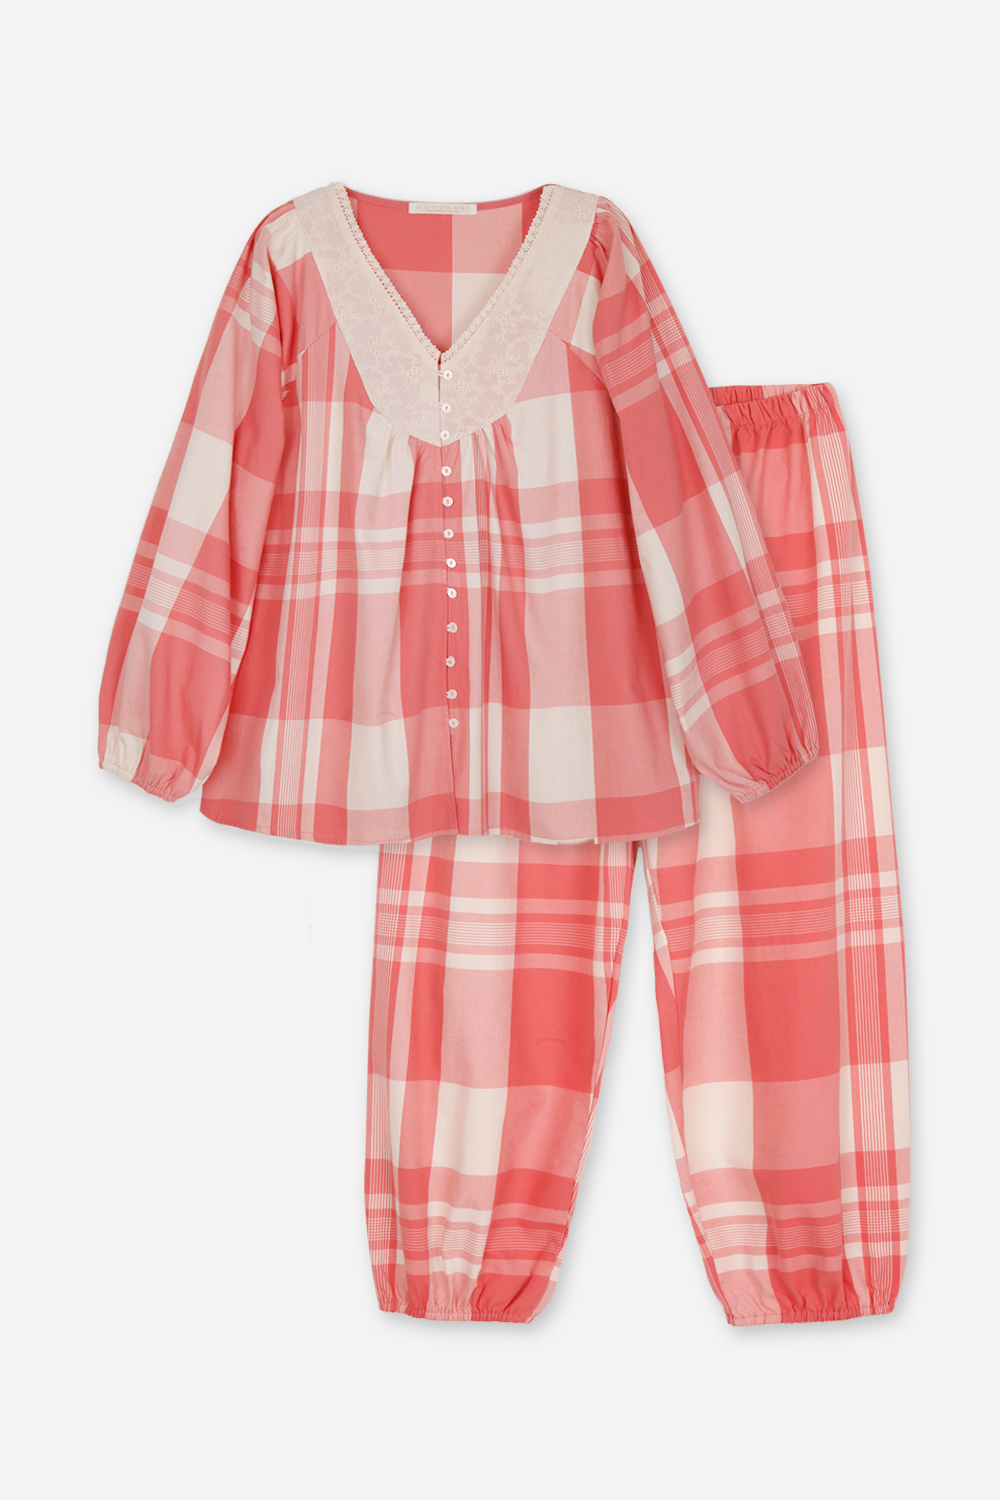 핑크파우더체크 세트잠옷, 홈웨어, 아동내복, 아동속옷,성인잠옷,고후나비